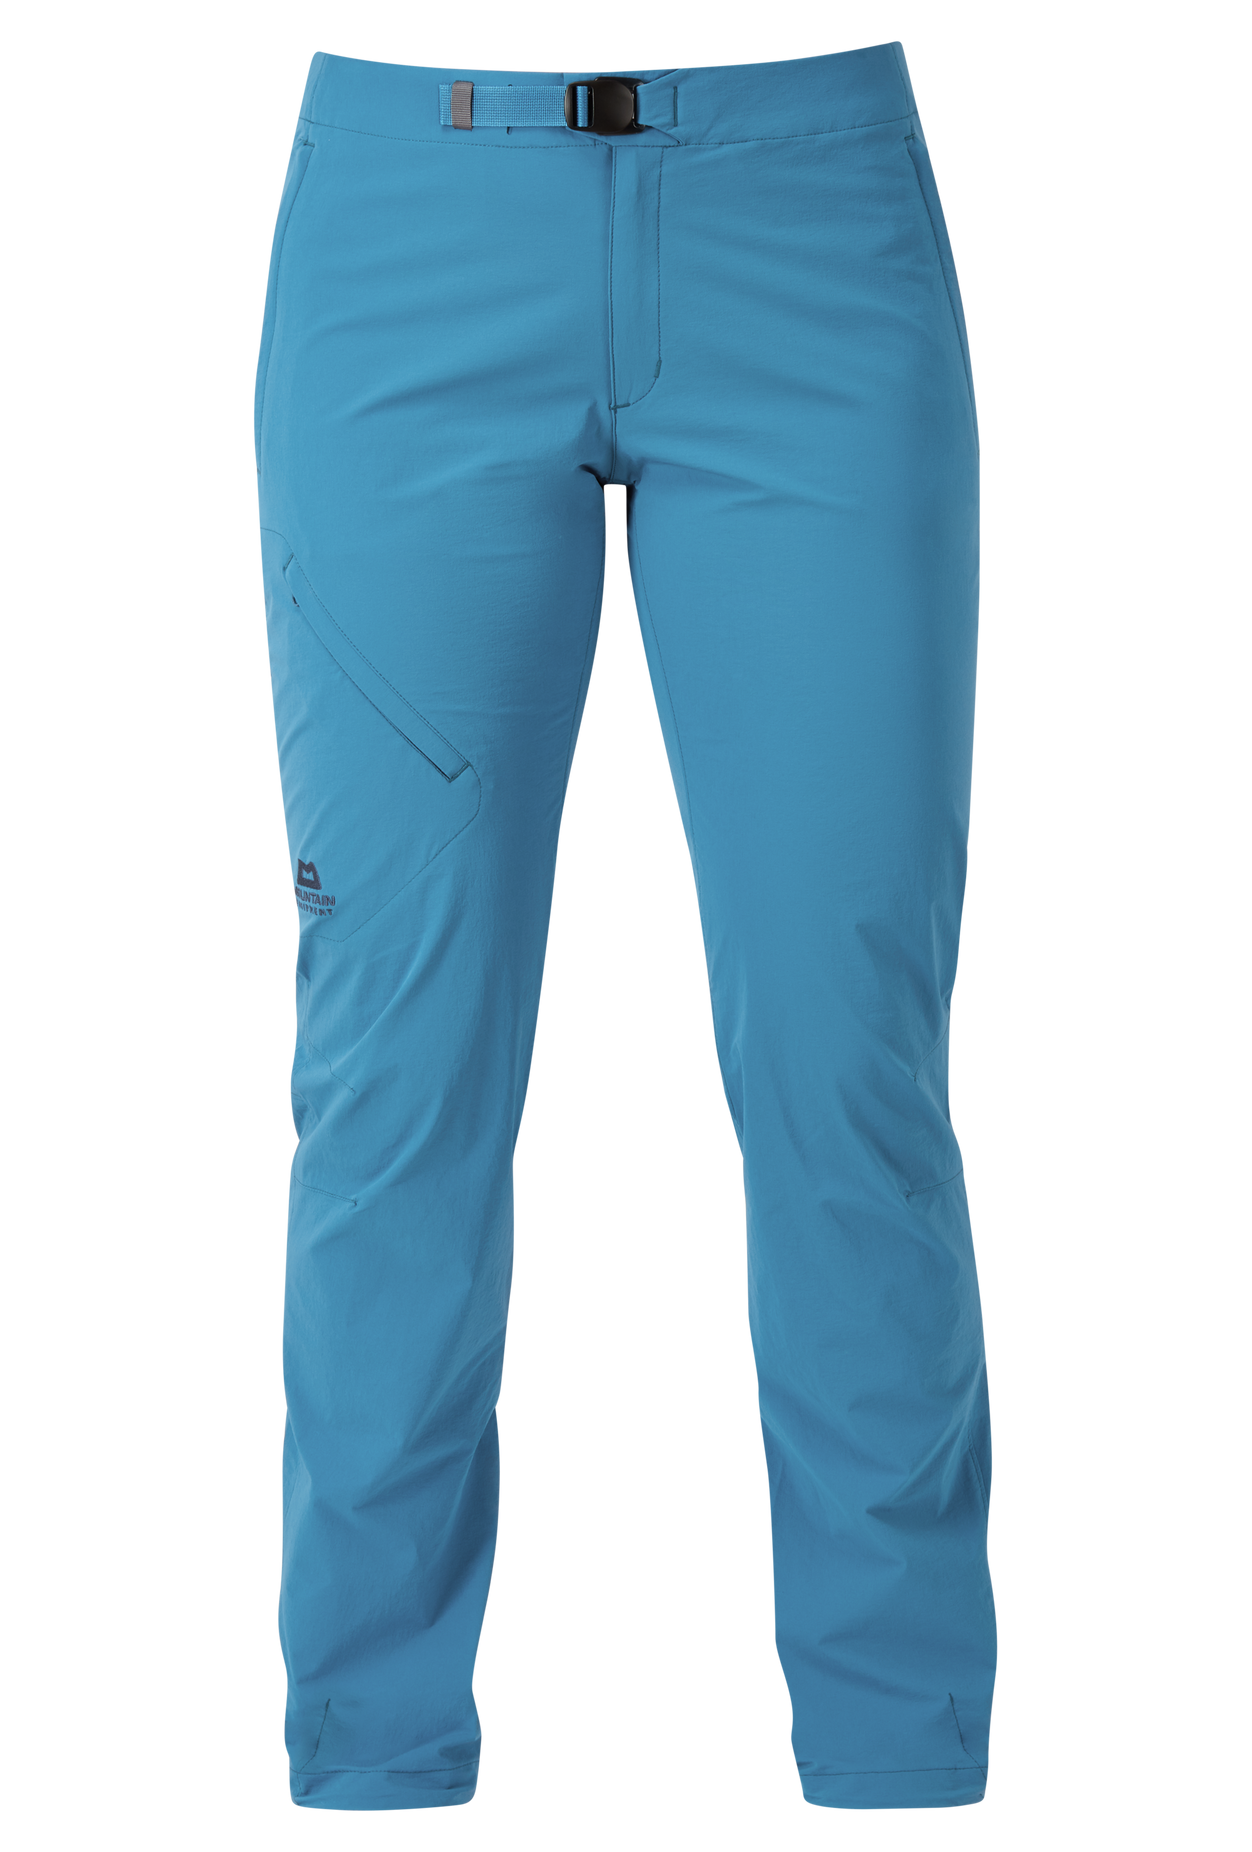 Mountain Equipment dámské softshellové kalhoty Comici Wmns Pant - prodloužené Barva: Alto Blue, Velikost: 10/S